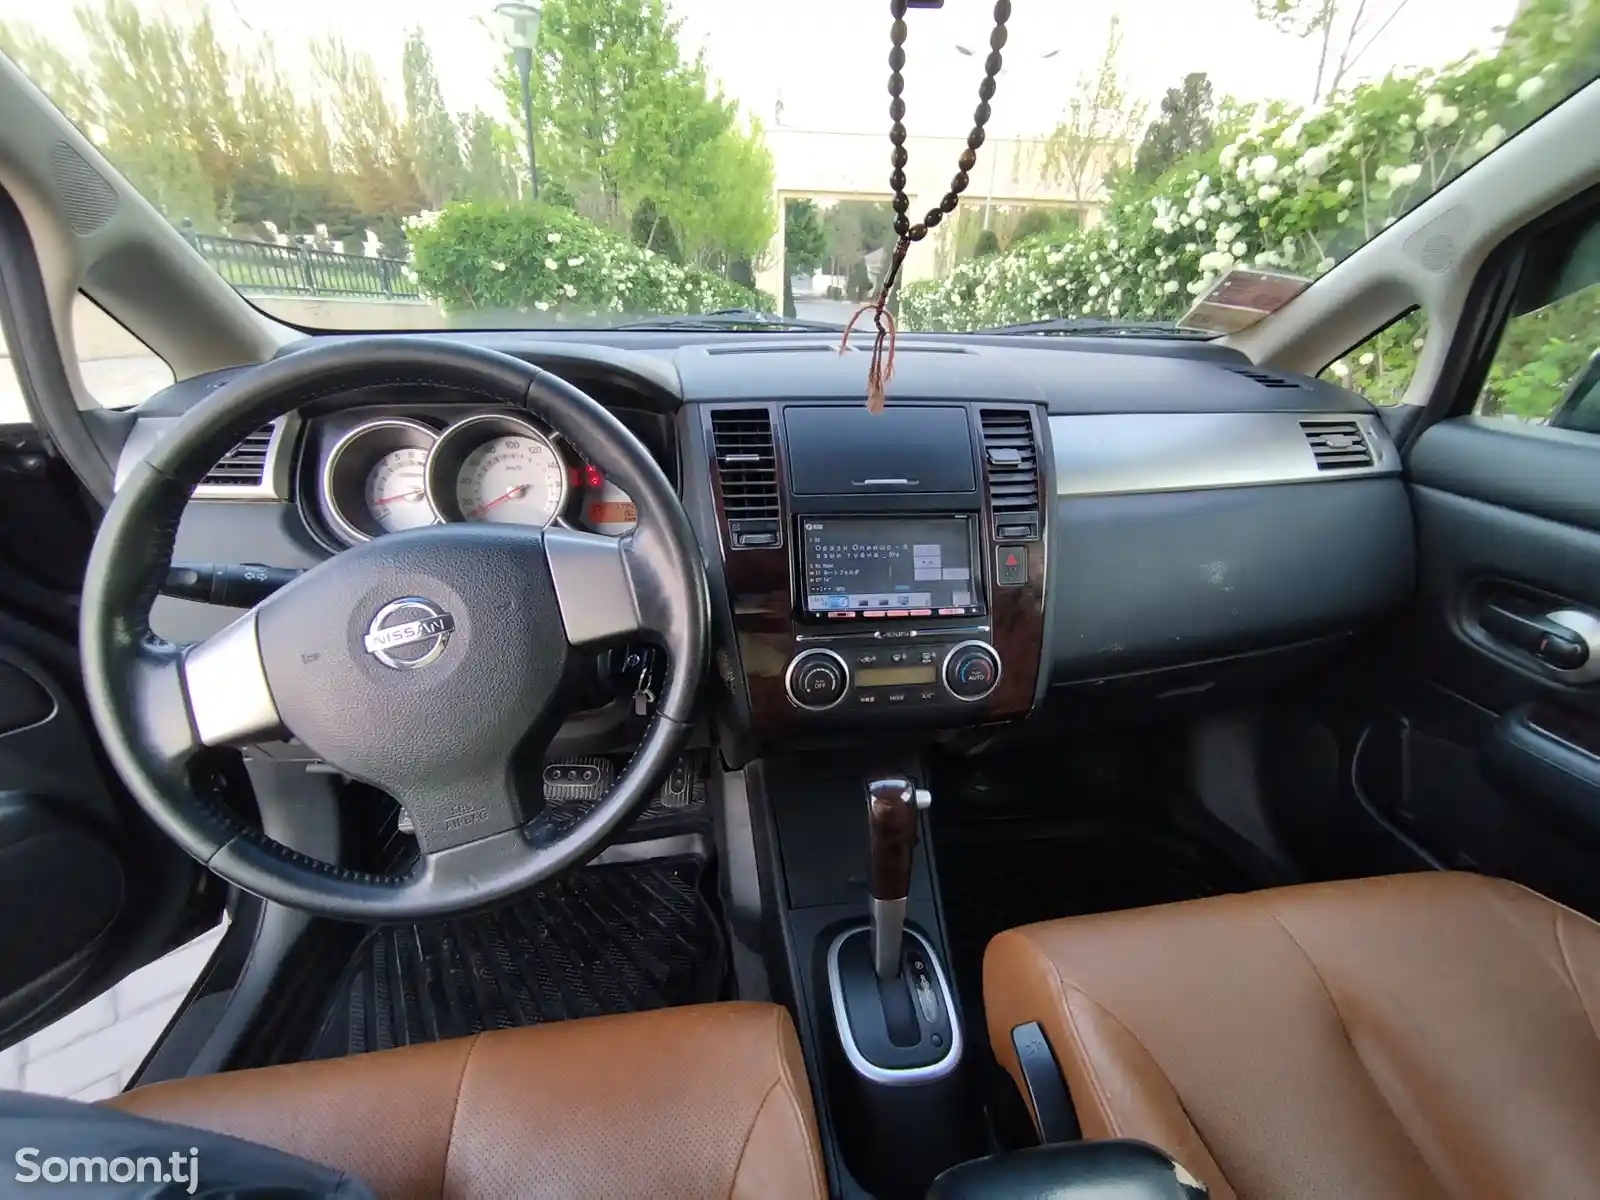 Nissan Tiida, 2009-11